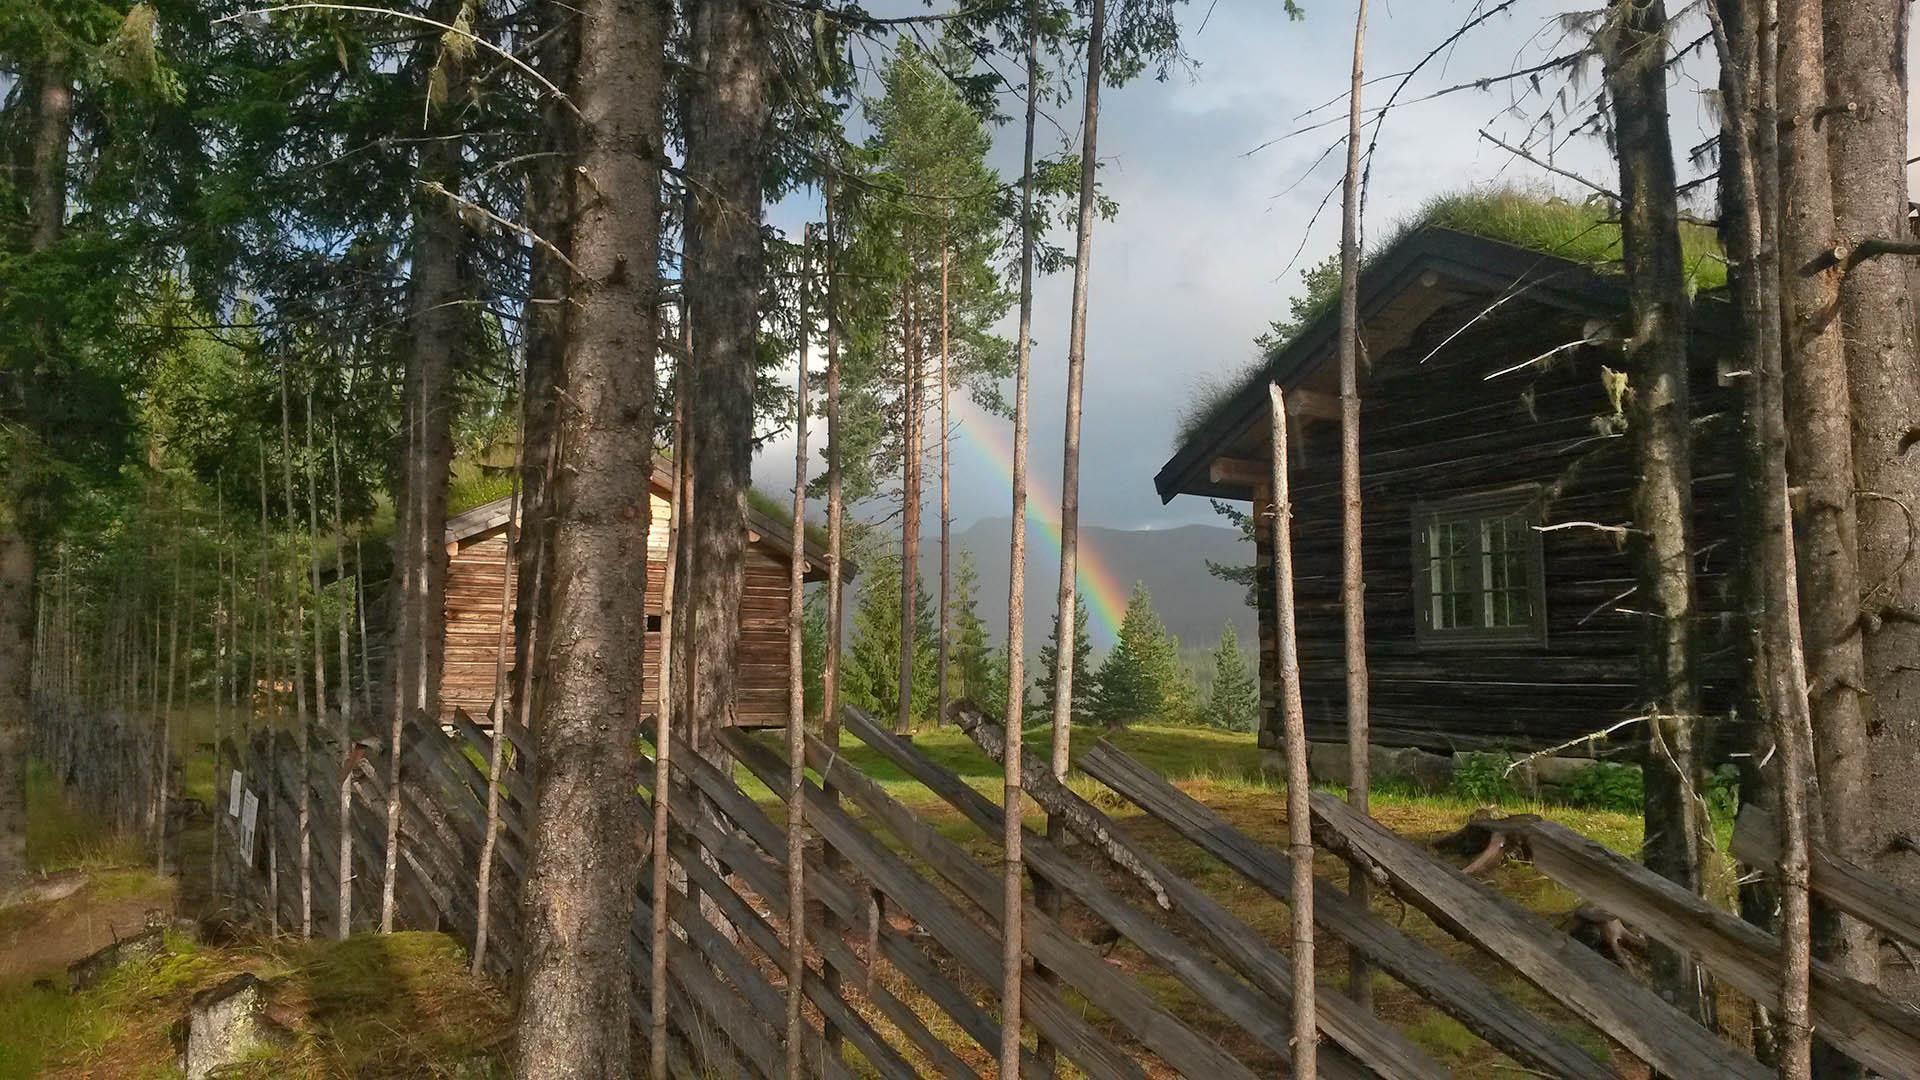 Skigard foran gammel tømmerhytte med gresstak og regnbue